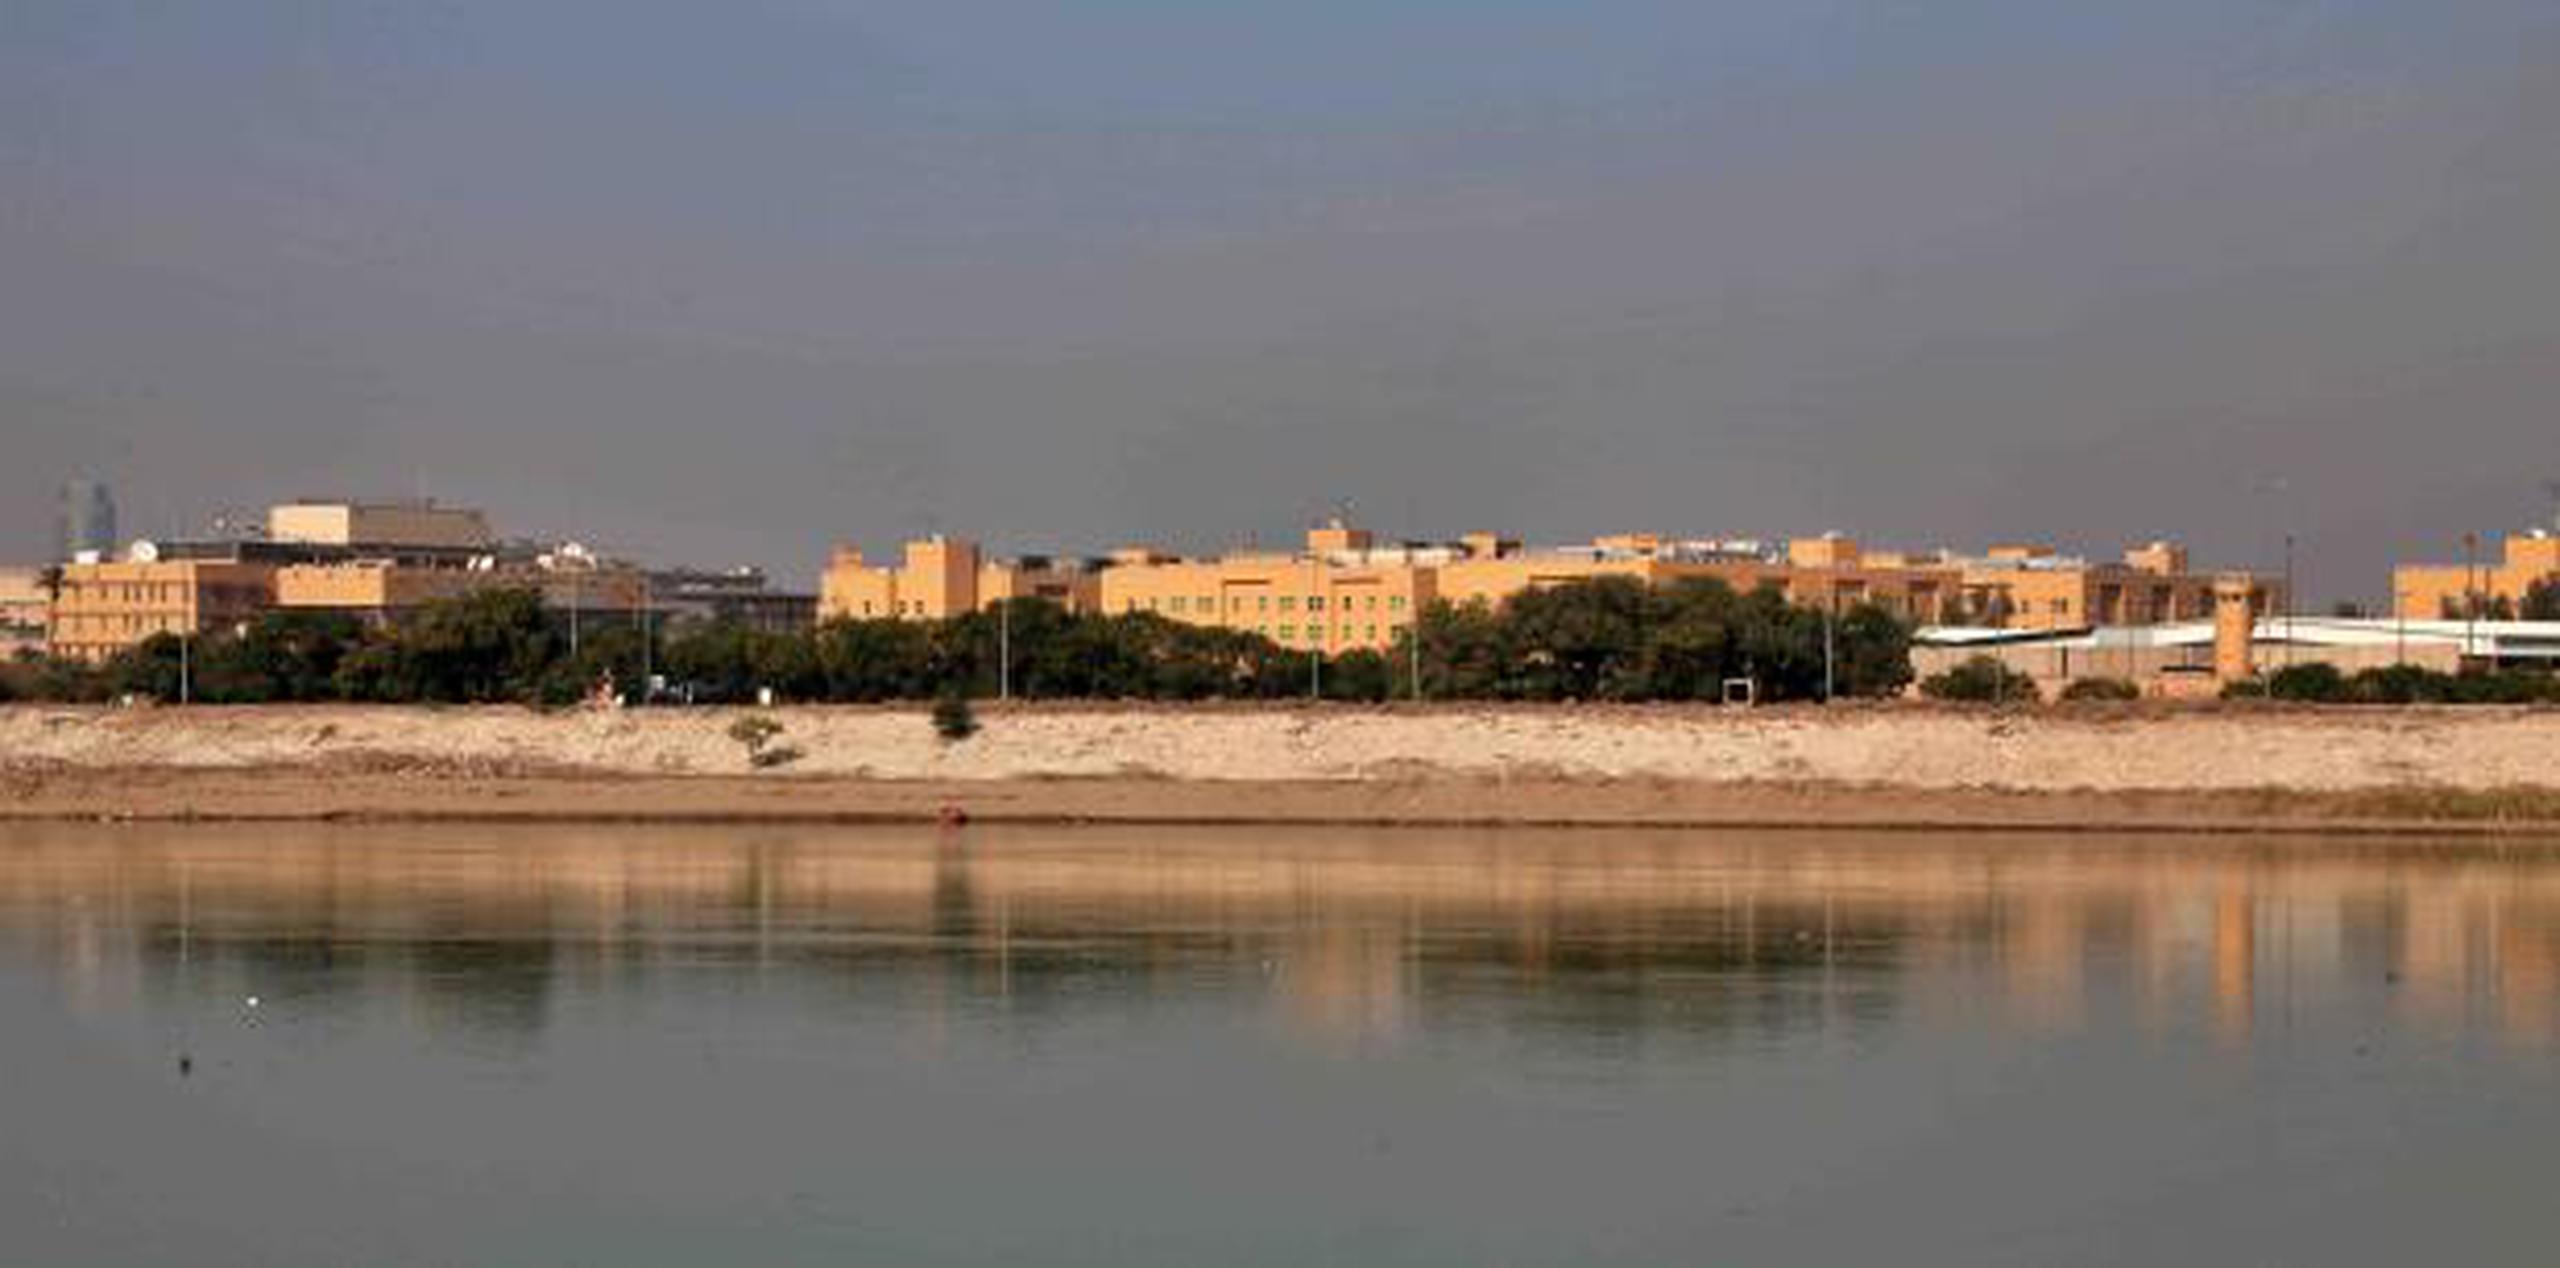 La embajada de Estados Unidos desde el otro lado del río Tigris en Bagdad, Irak. (AP / Khalid Mohammed)